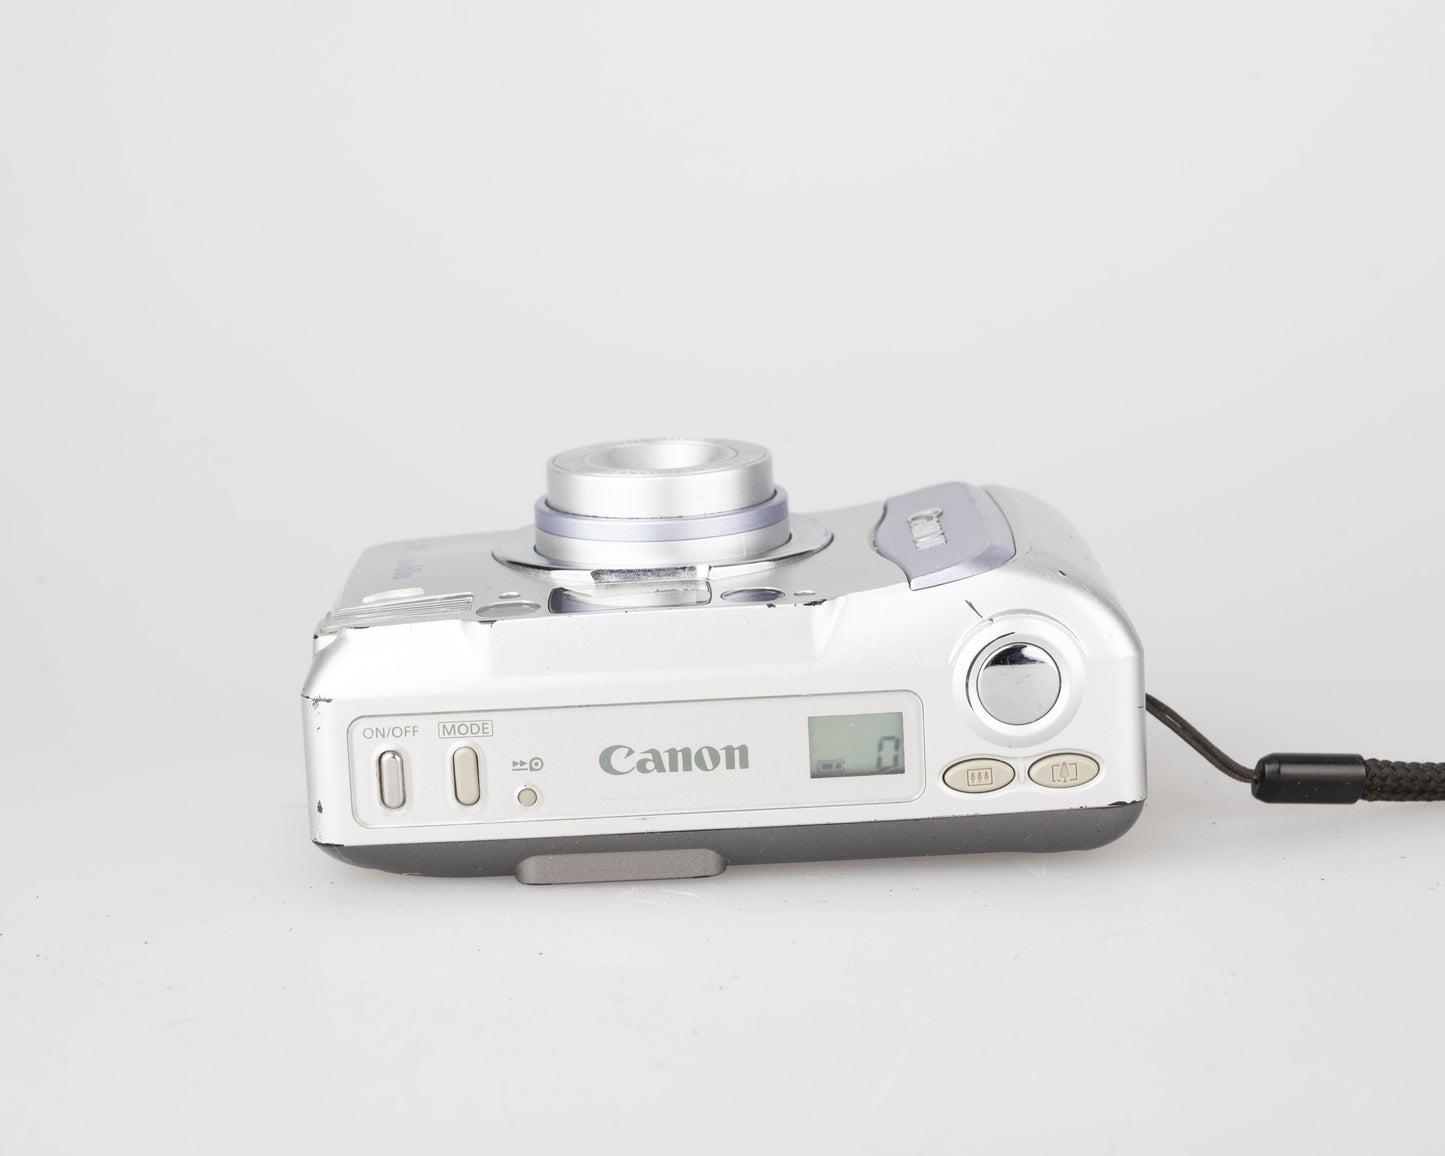 Canon AF Zoom 60u 35mm camera (serial 94009375)